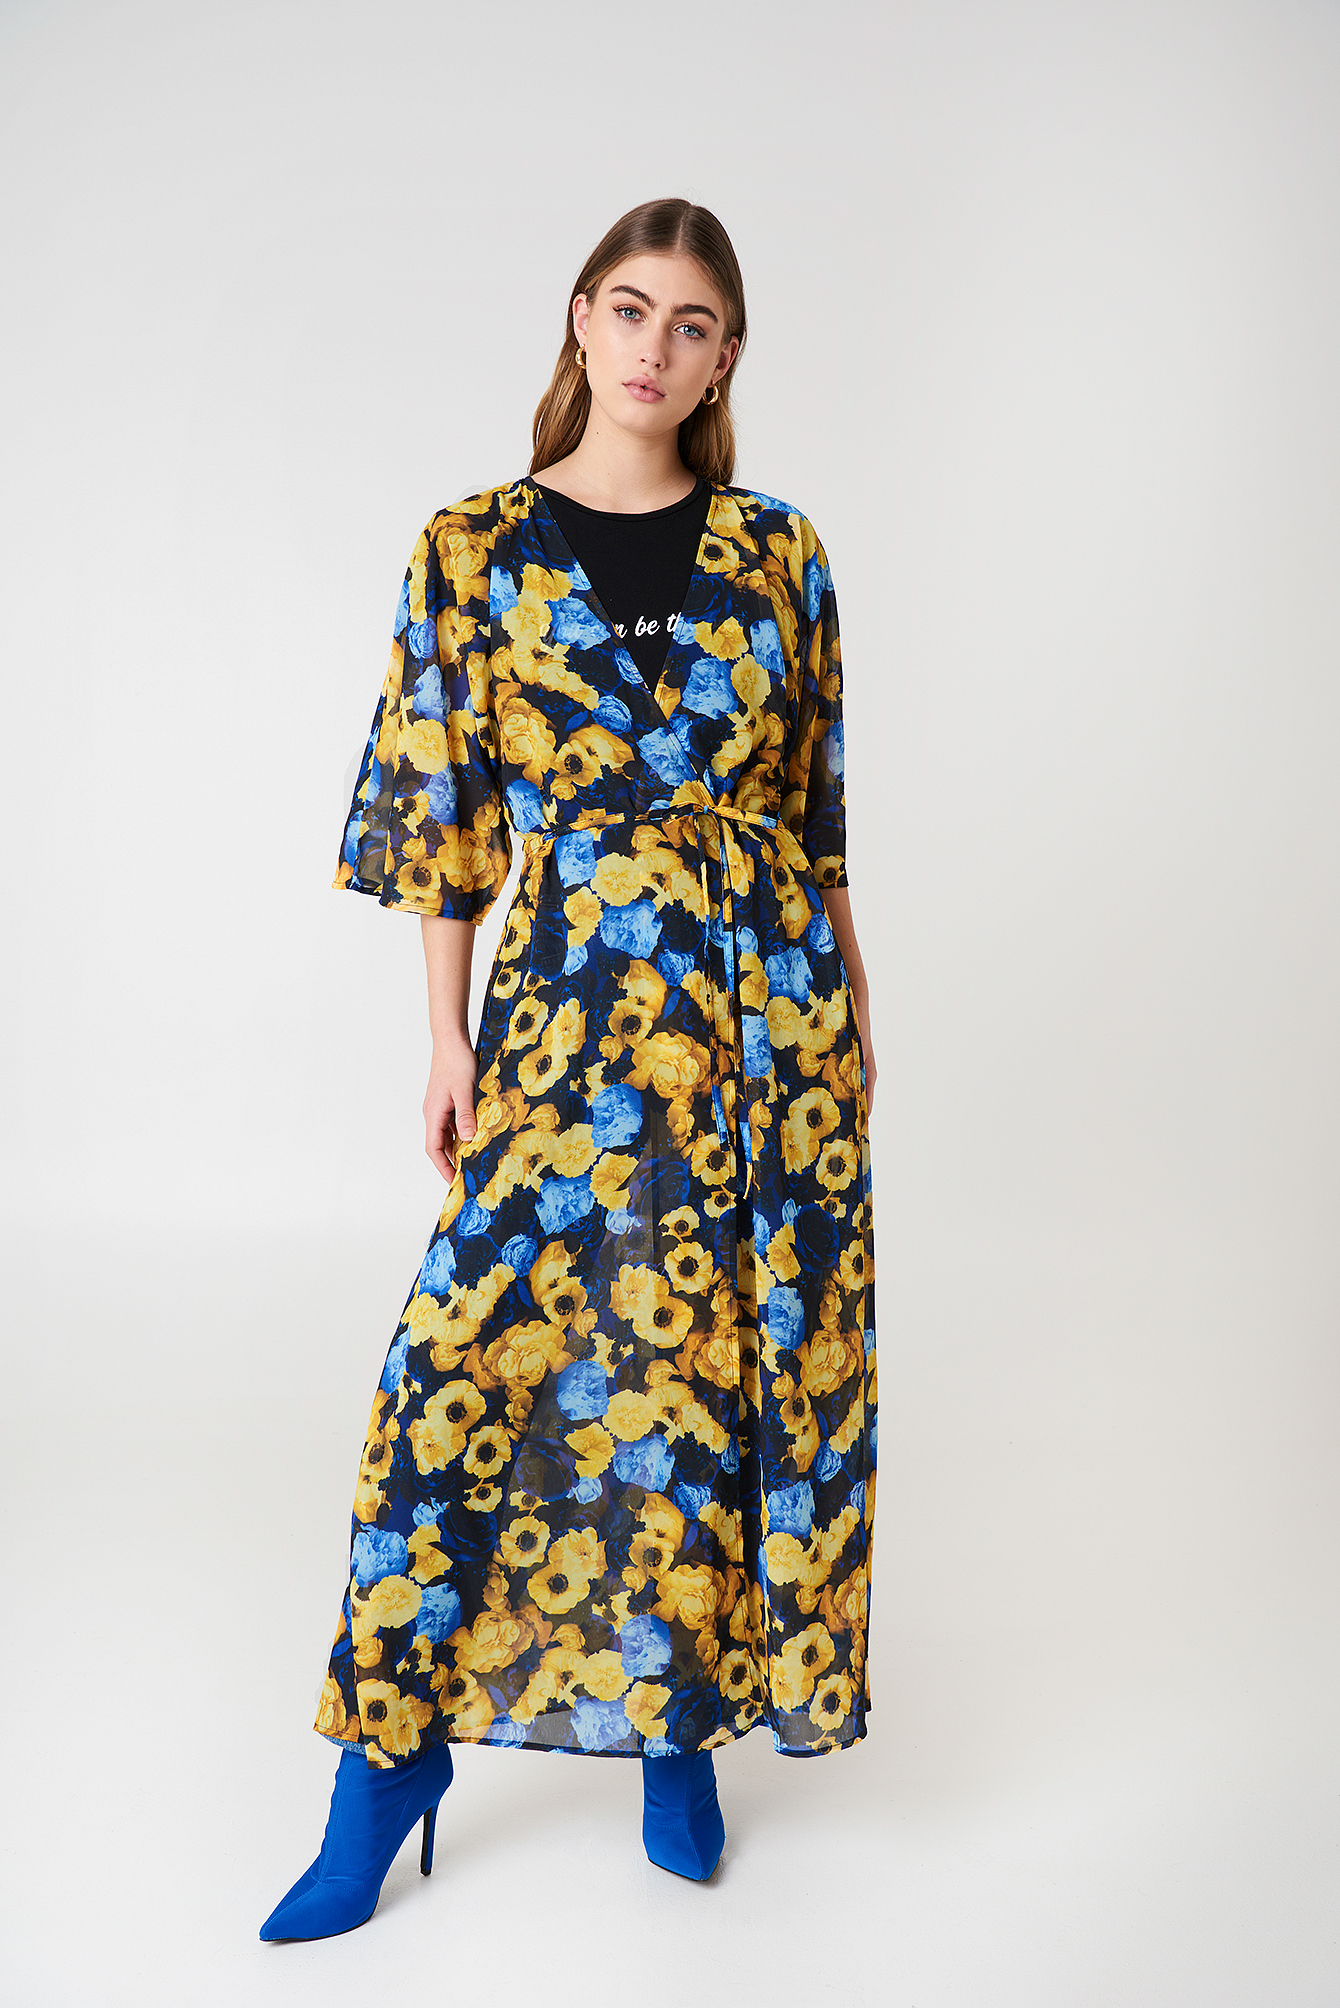 Blue Yellow Print Chiffon Coat Dress